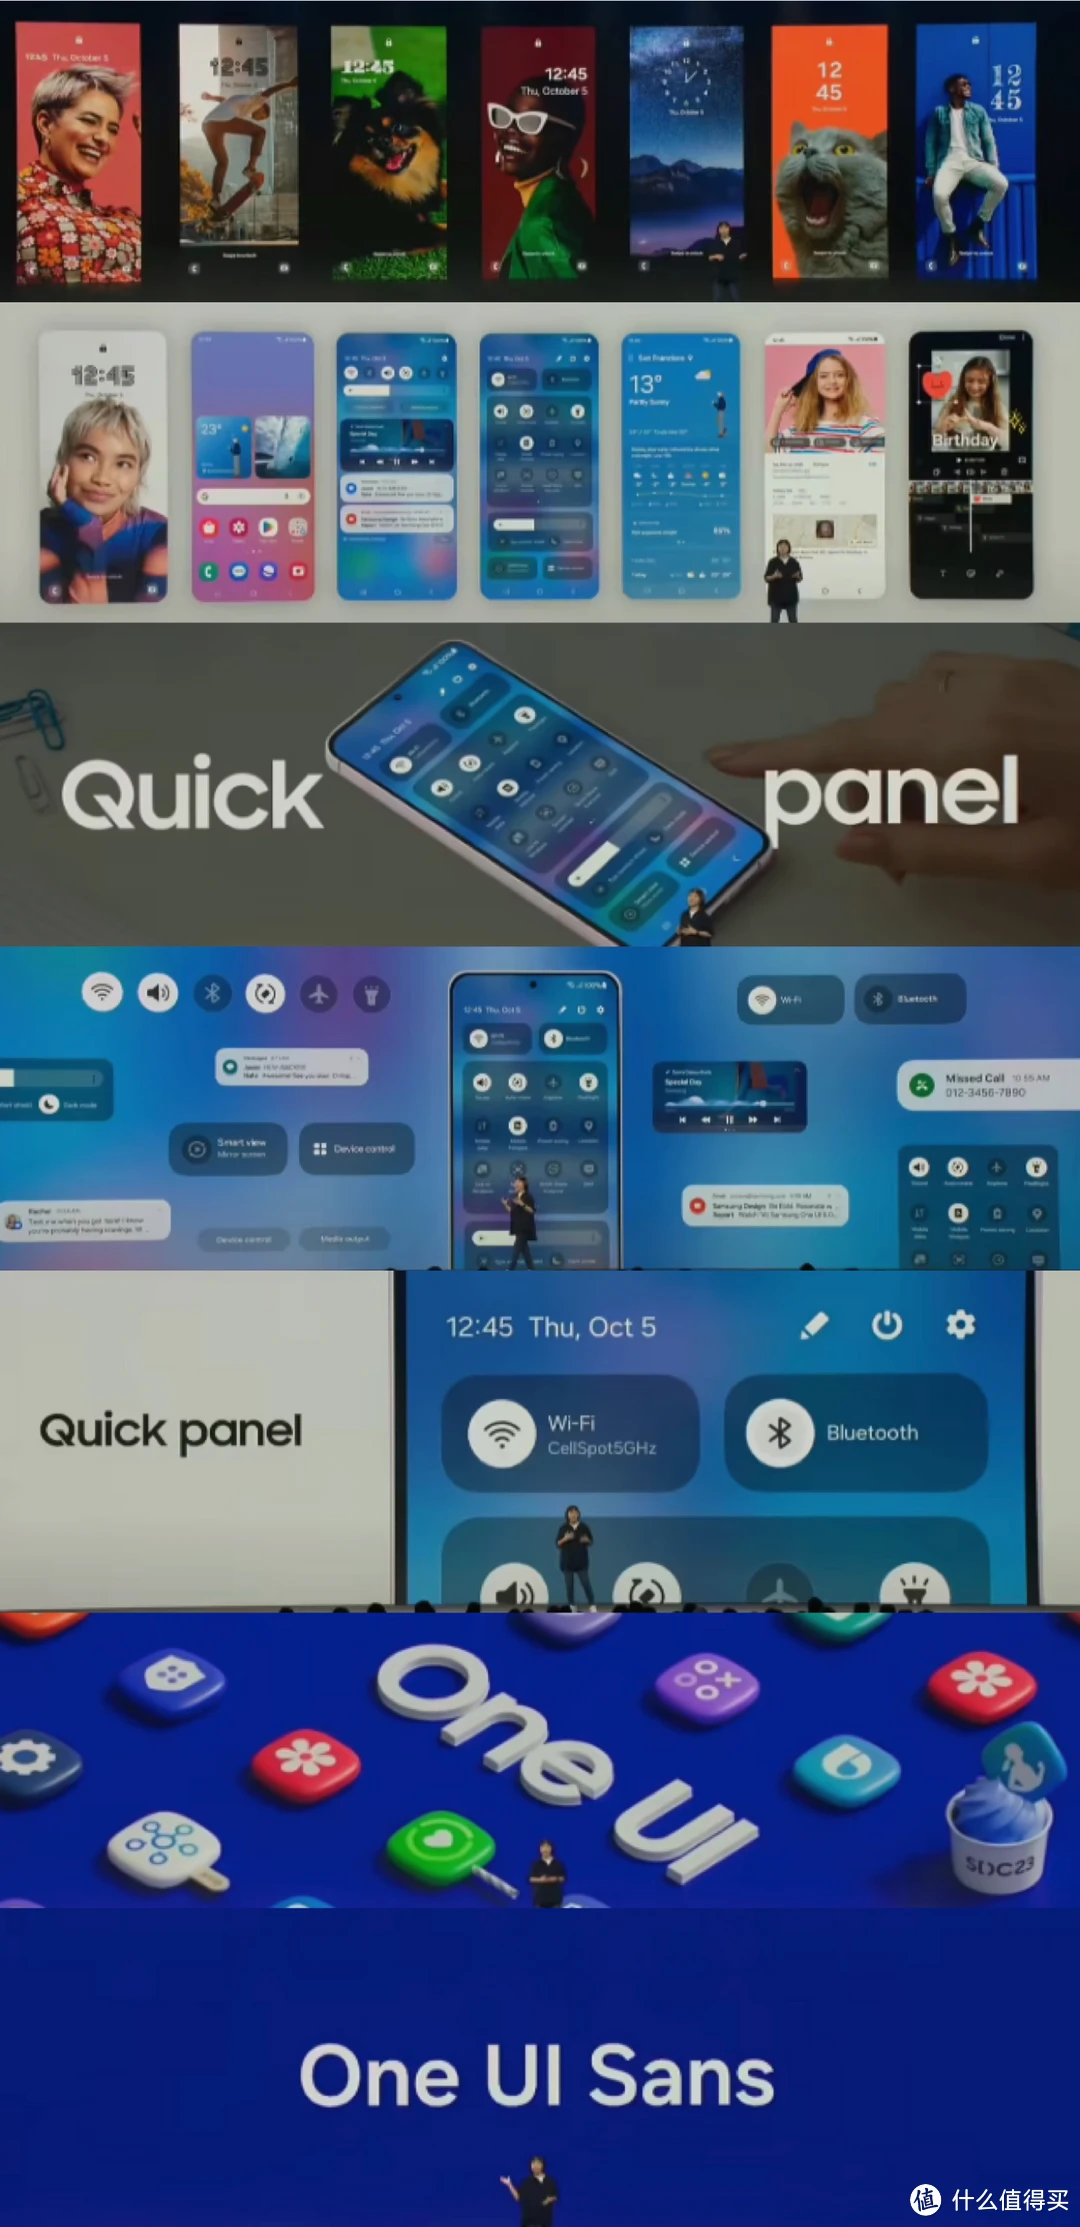 安卓系统 UI 大揭秘：三星 OneUI 的独特设计与用户体验  第2张